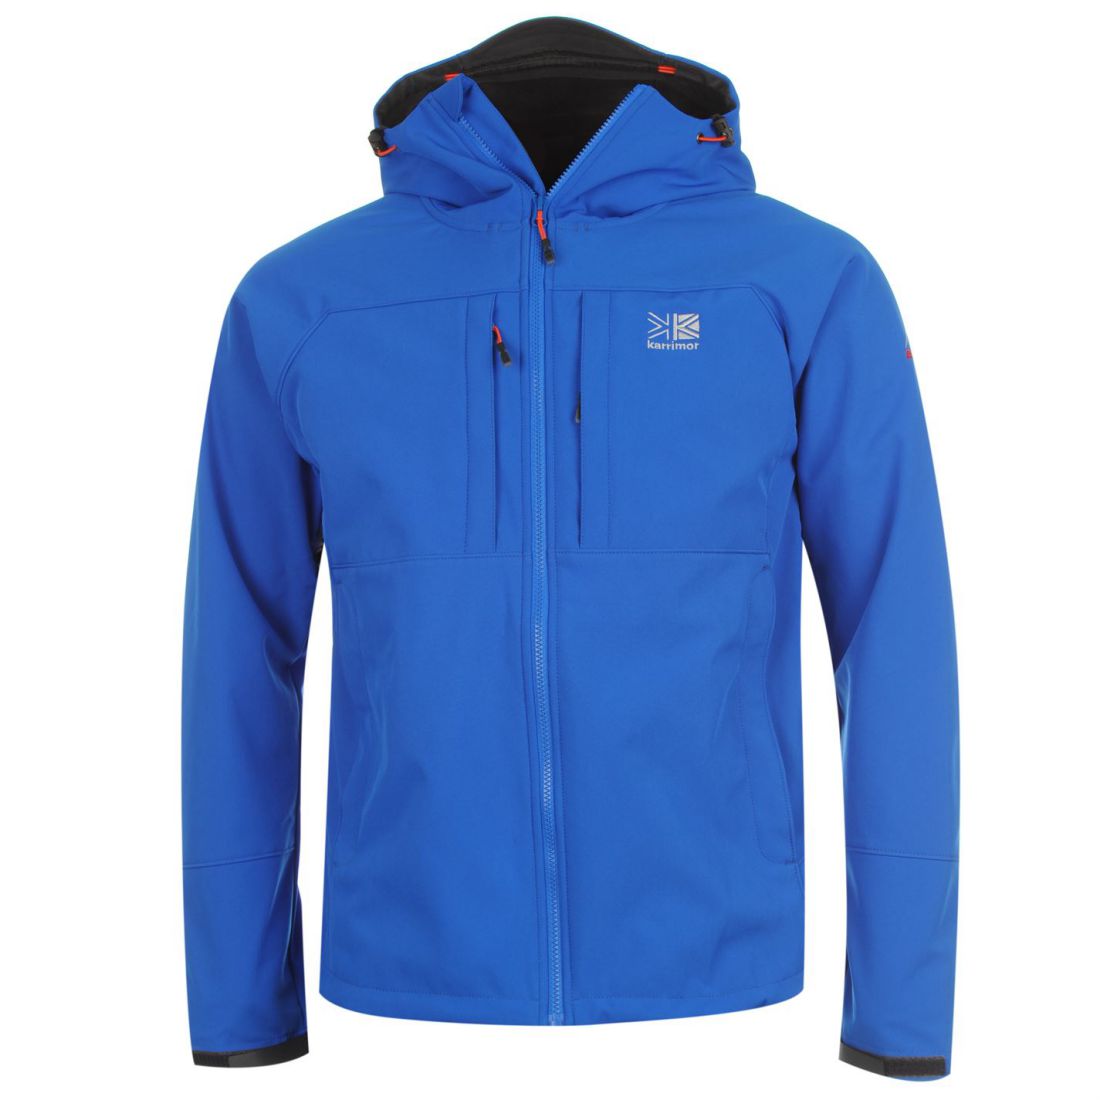 Karrimor Alpiniste Soft Shell Jacket Ventilation Pockets Hood Lined ...